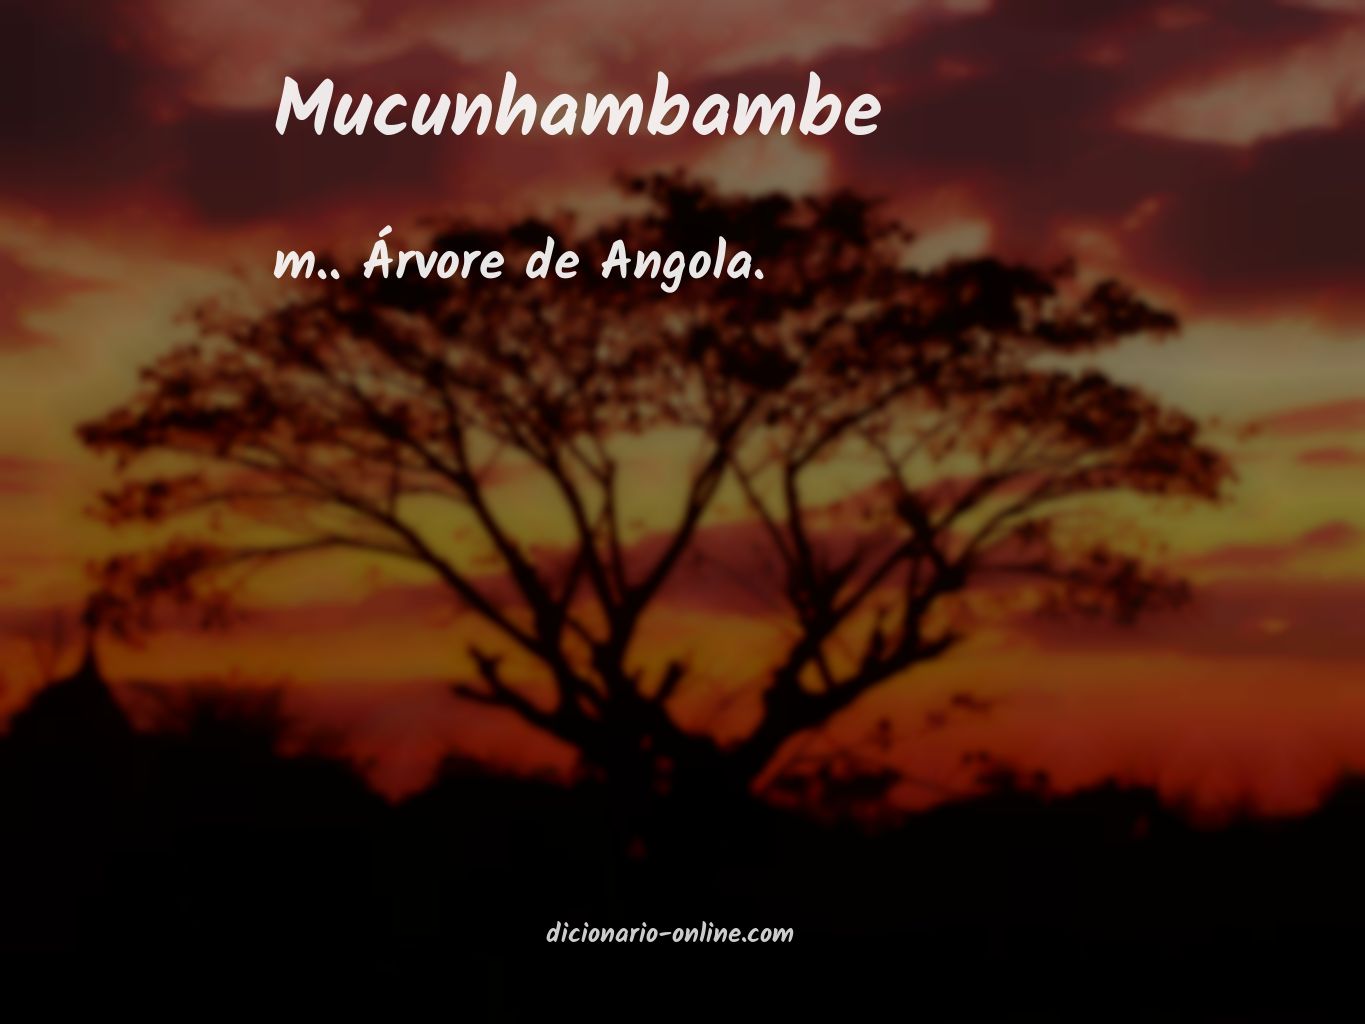 Significado de mucunhambambe